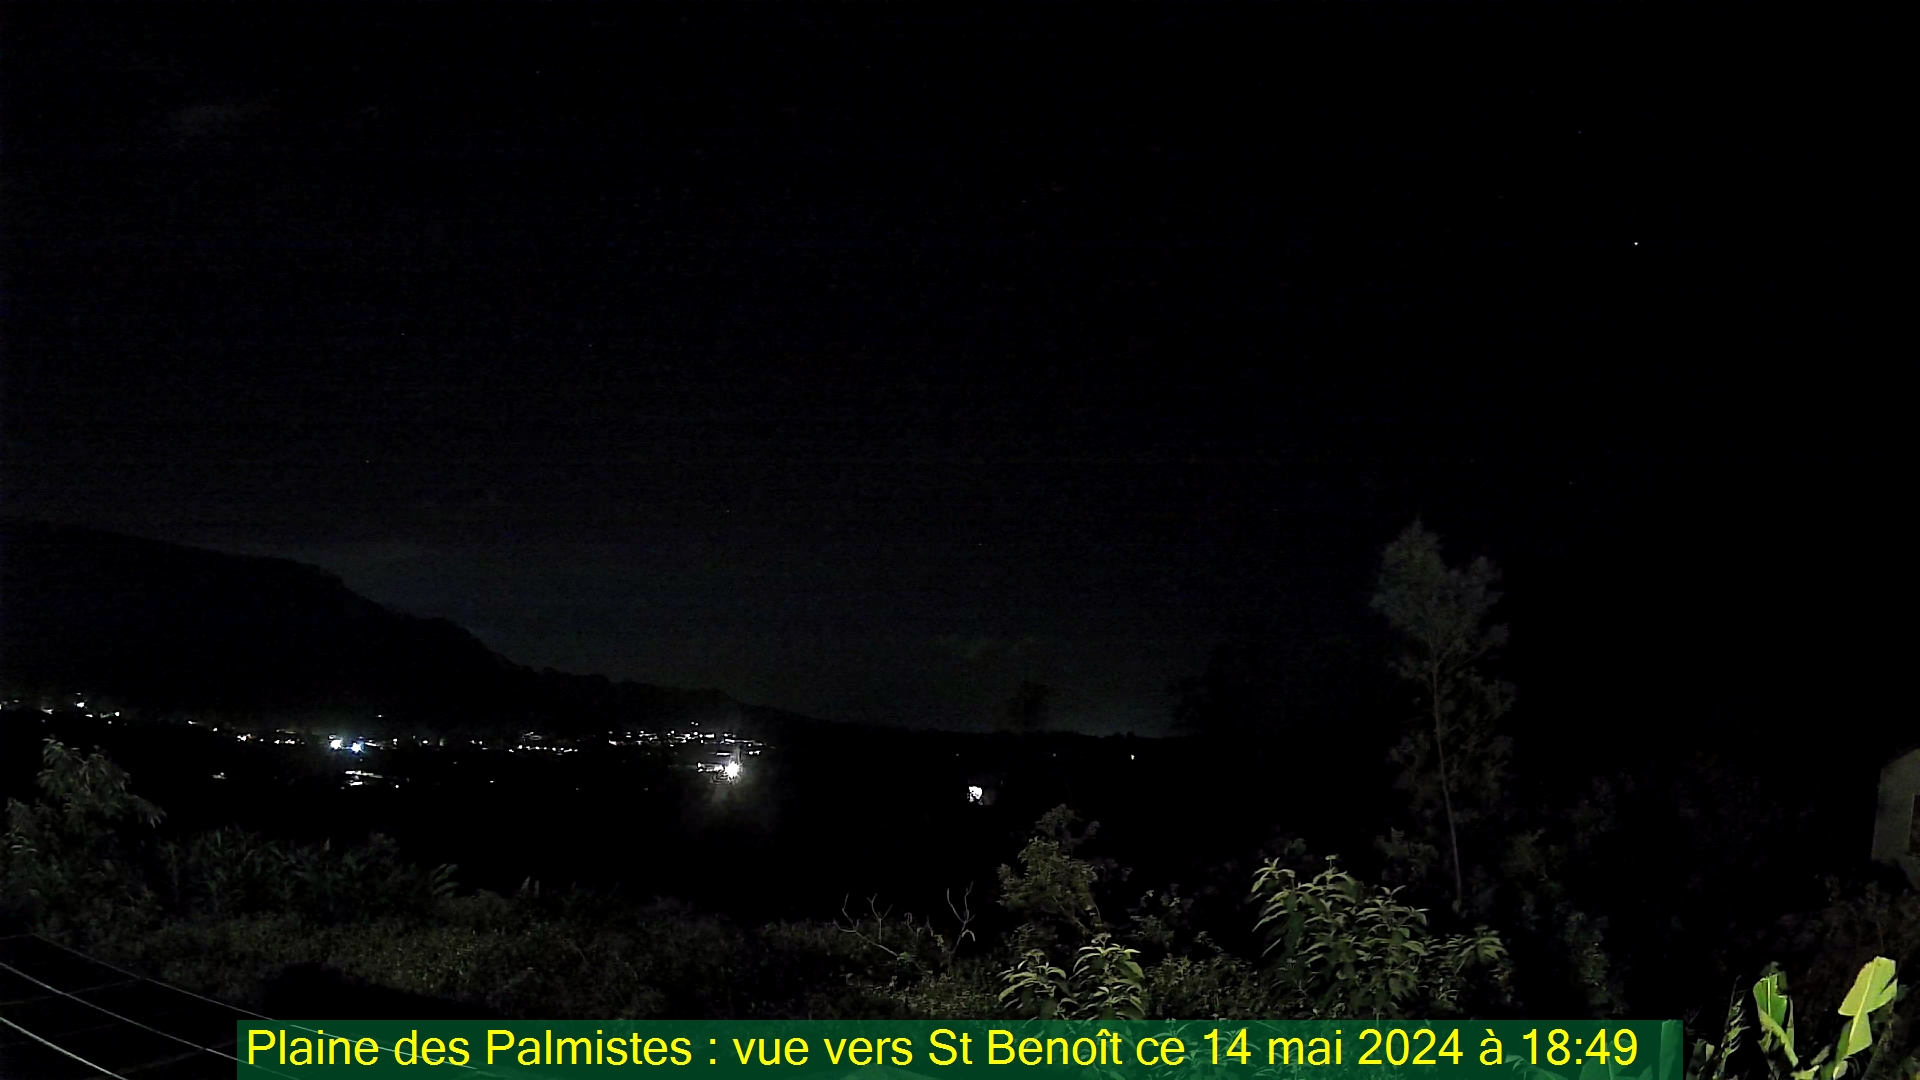 Saint-Denis (Réunion) Søn. 18:50